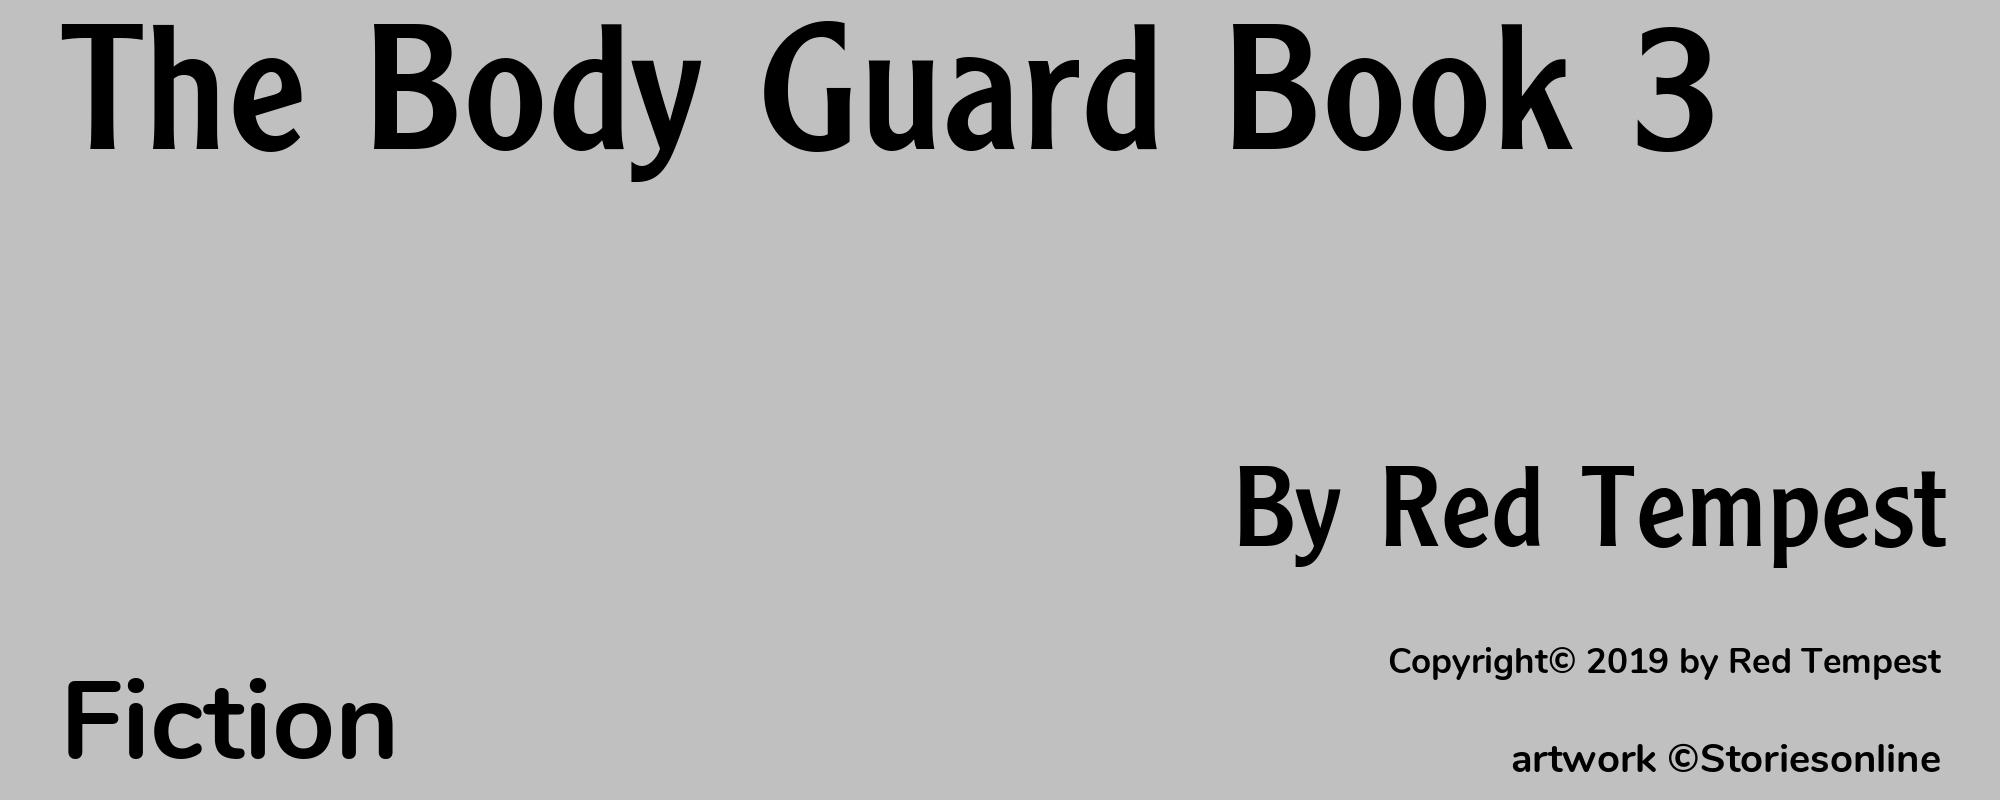 The Body Guard Book 3 - Cover